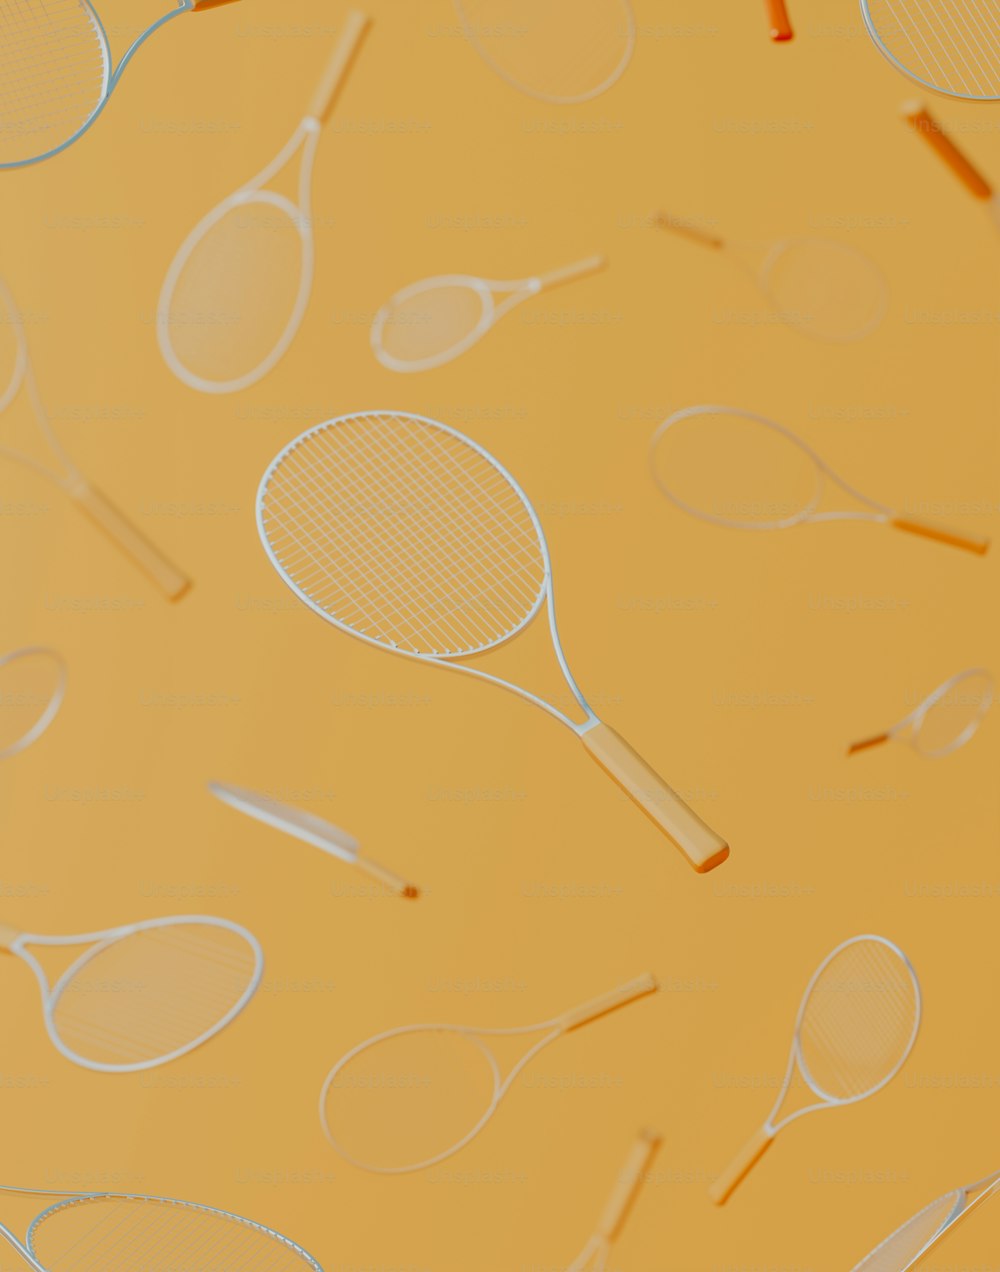 un groupe de raquettes de tennis superposées les unes sur les autres